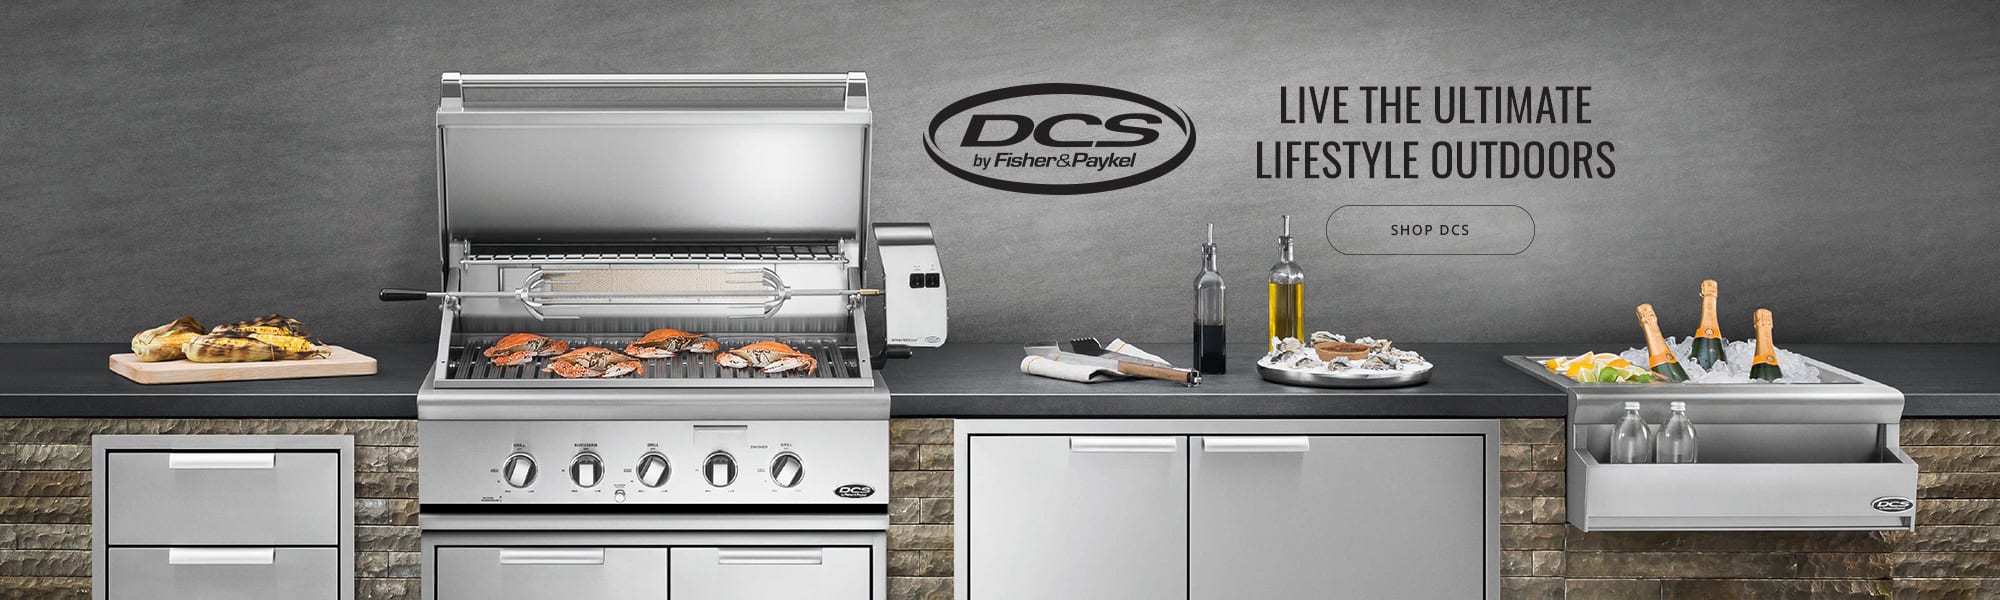 DCS Appliances